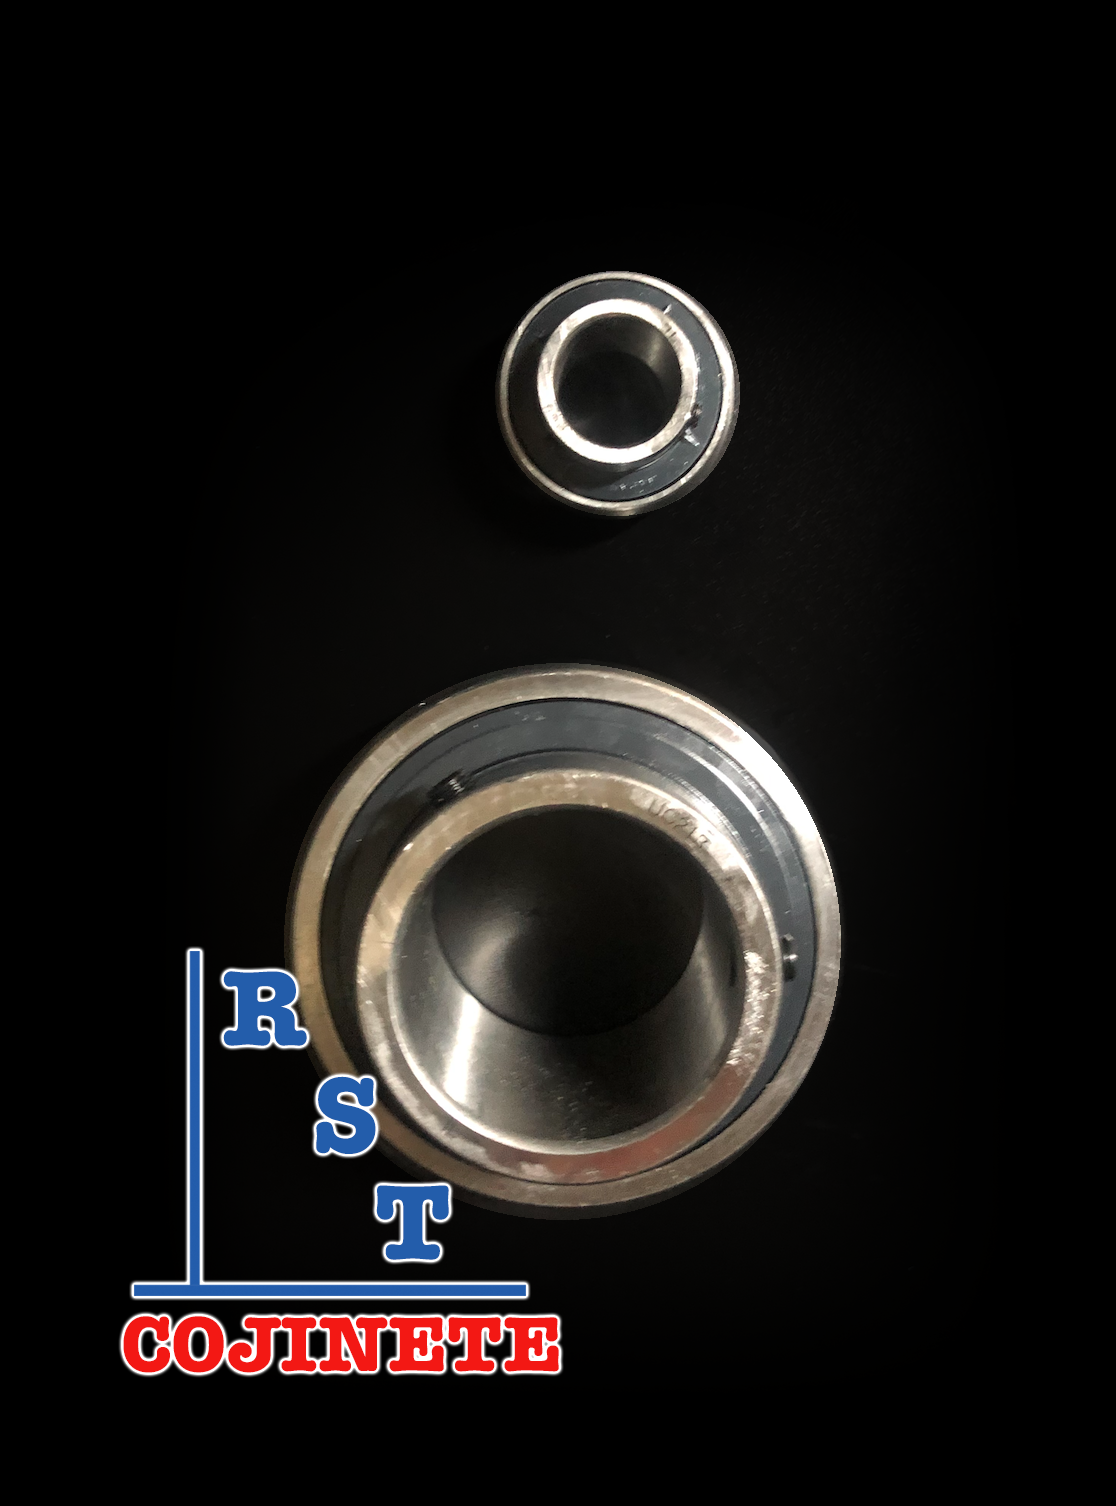 Cojinete insertable UC211-34 | Rodamiento para eje de 2-⅛" rígido de bolas con sello de hule para chumacera-2